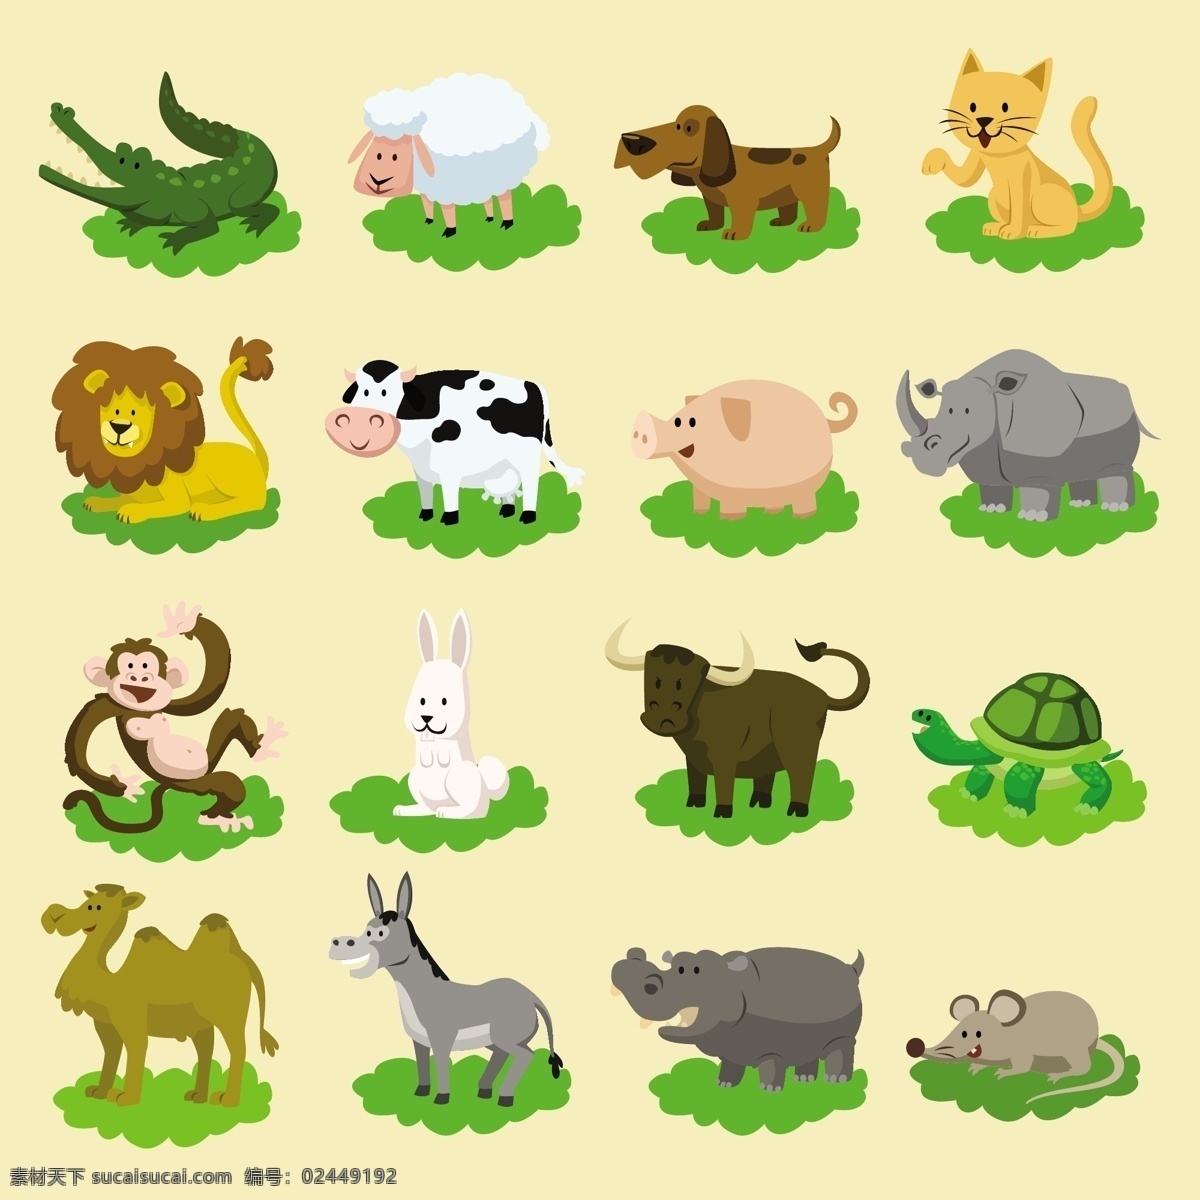 动物 动物园 鳄鱼 狗 河马 猴子 卡通动物 可爱 可爱宠物 老鼠 驴子 骆驼 猫狗 套 有趣 的卡 通 手绘 兔子 乌龟 狮子 绵羊 犀牛 猪